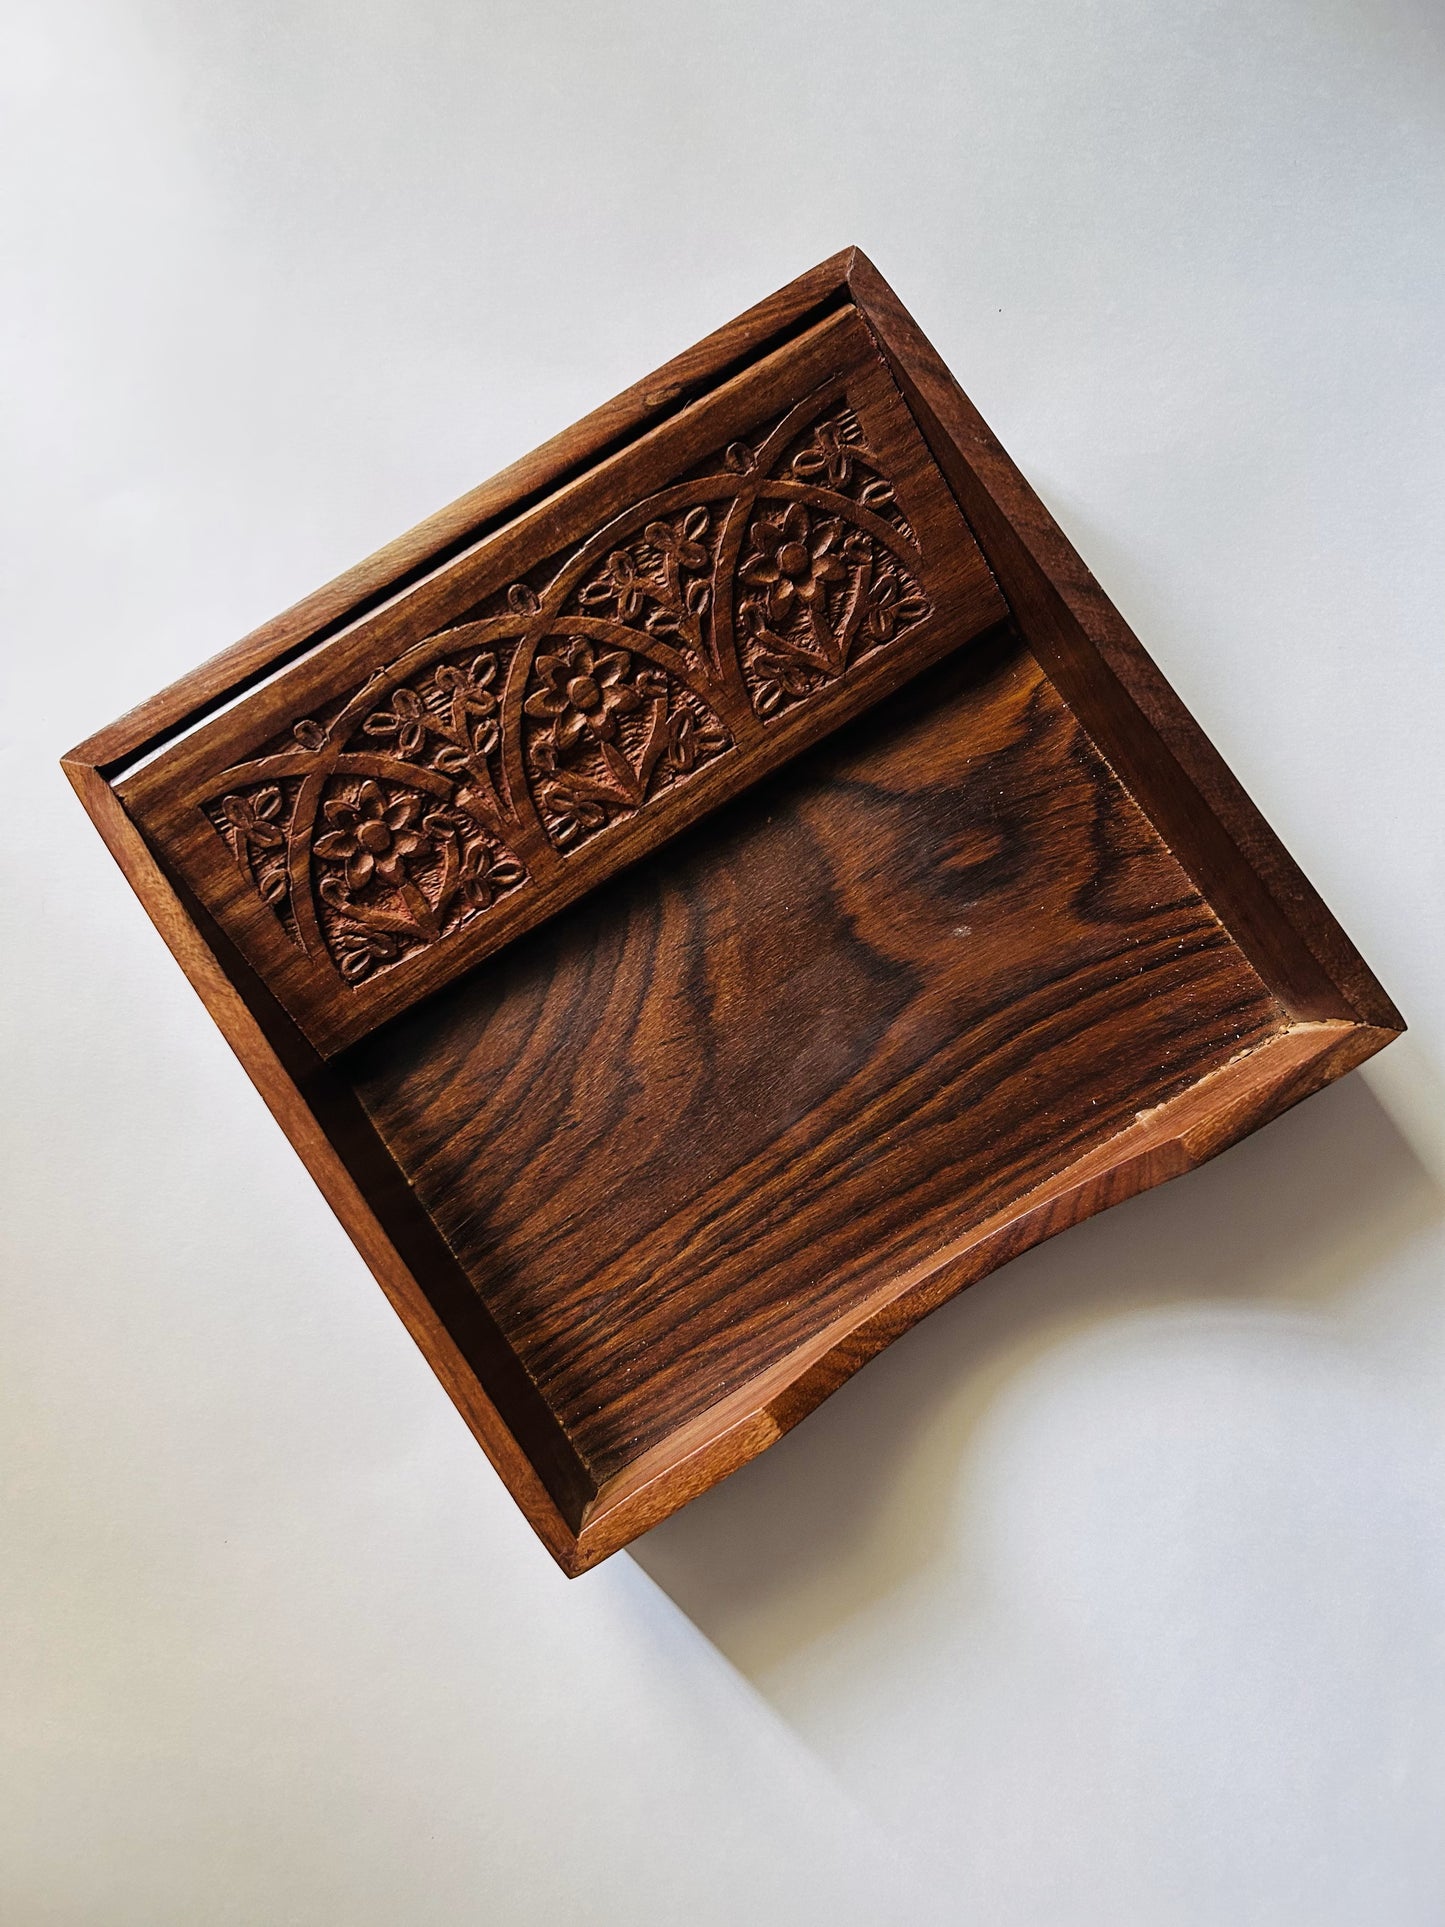 LEMONGINGER Hand-drawn Wooden Napkin Holder | Paper Napkin Dispenser